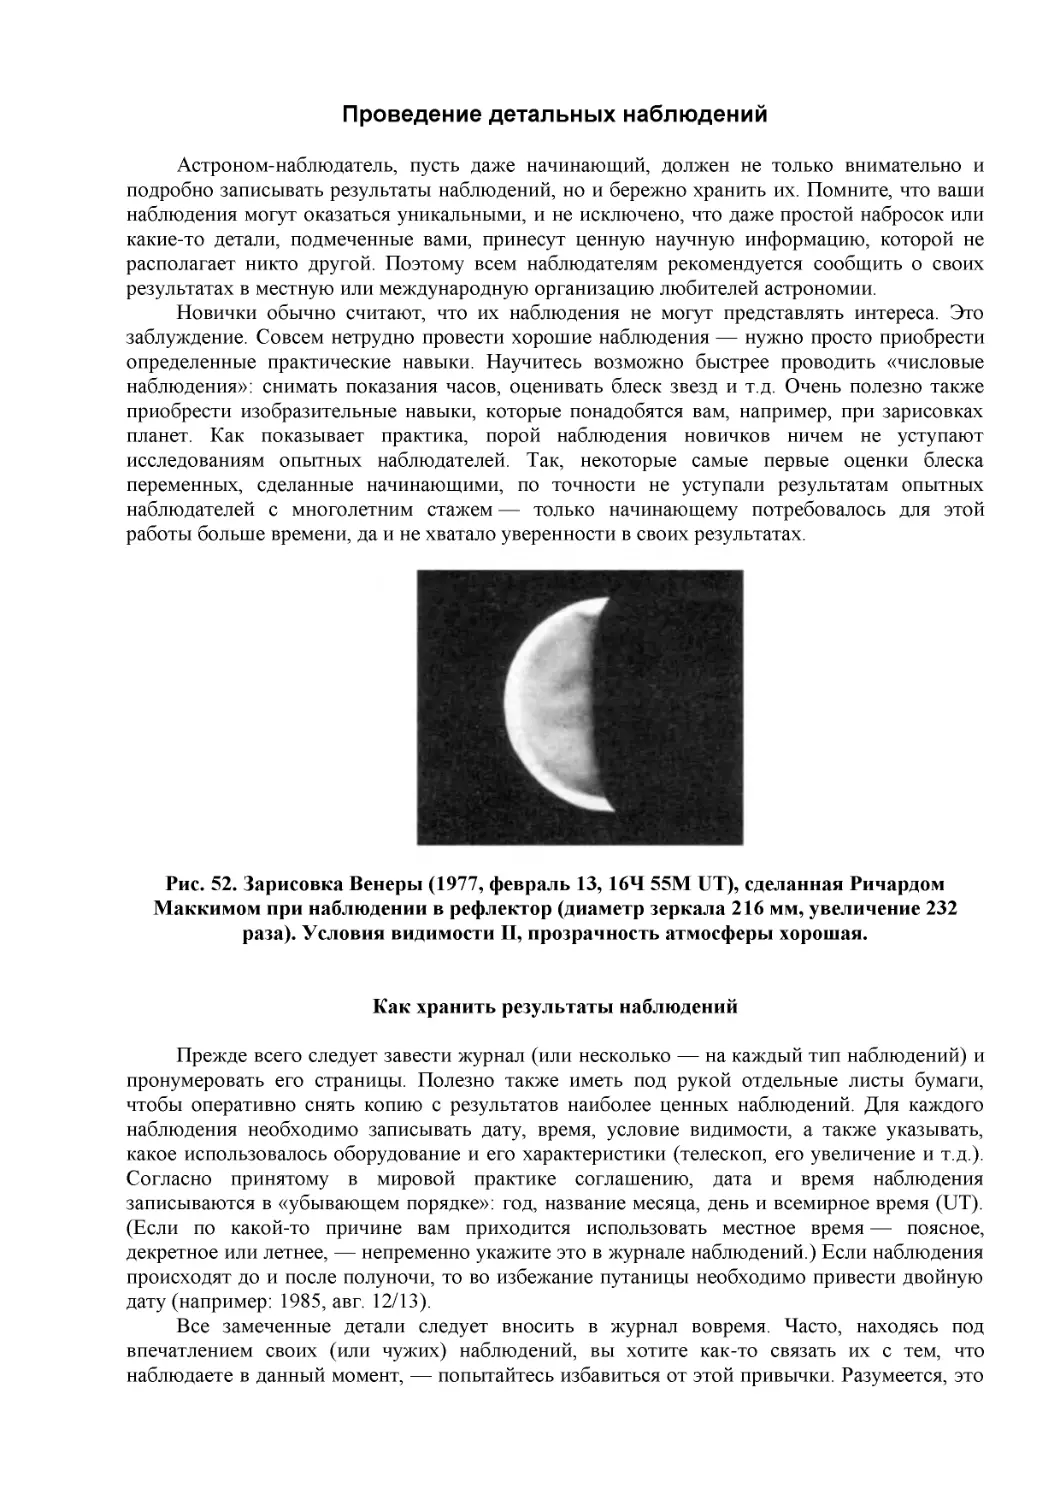 Проведение детальных наблюдений
Рис. 52. Зарисовка Венеры (1977, февраль 13, 16Ч 55М UT), сделанная Ричардом Маккимом при наблюдении в рефлектор (диаметр зеркала 216 мм, увеличение 232 раза). Условия видимости II, прозрачность атмосферы хорошая.
Как хранить результаты наблюдений